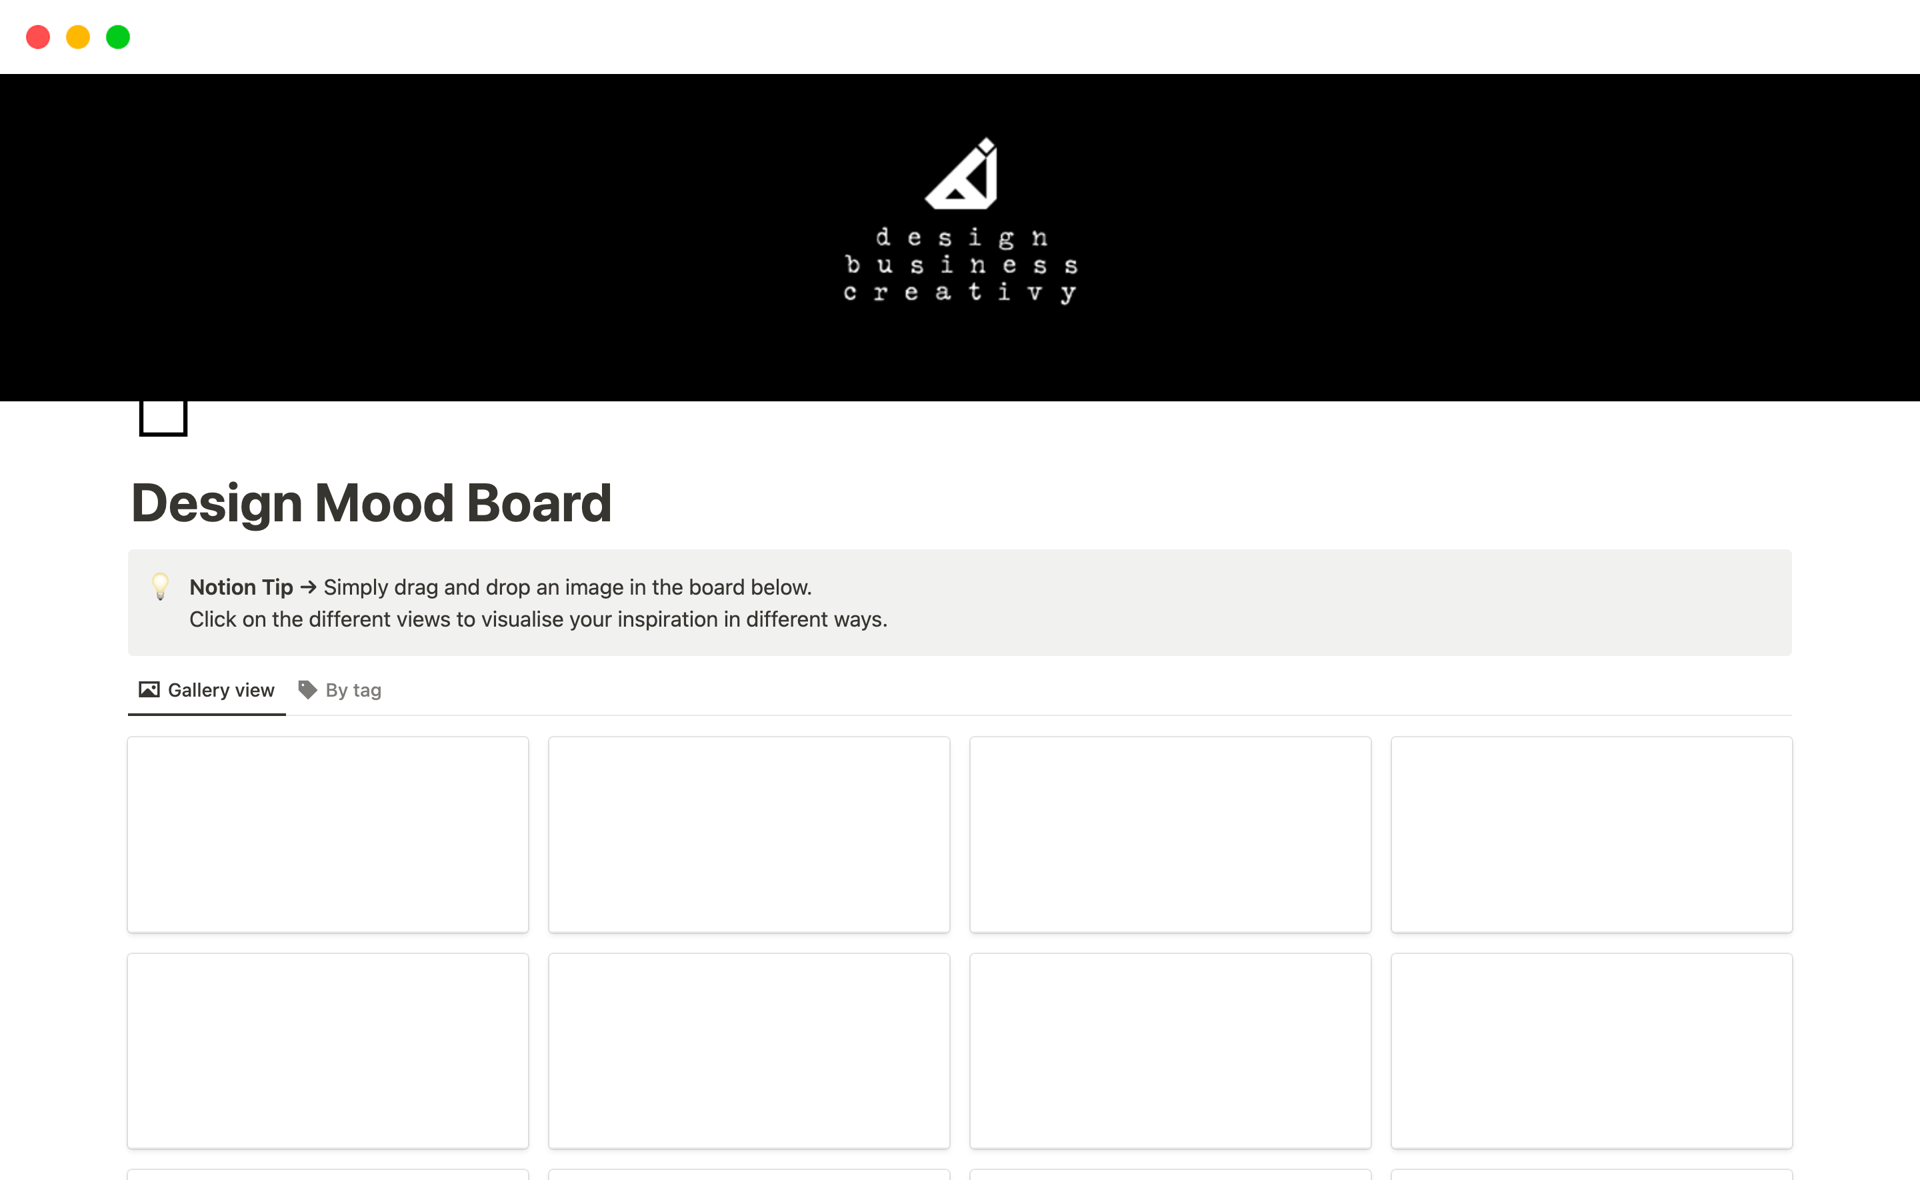 Vista previa de una plantilla para Design Mood Board